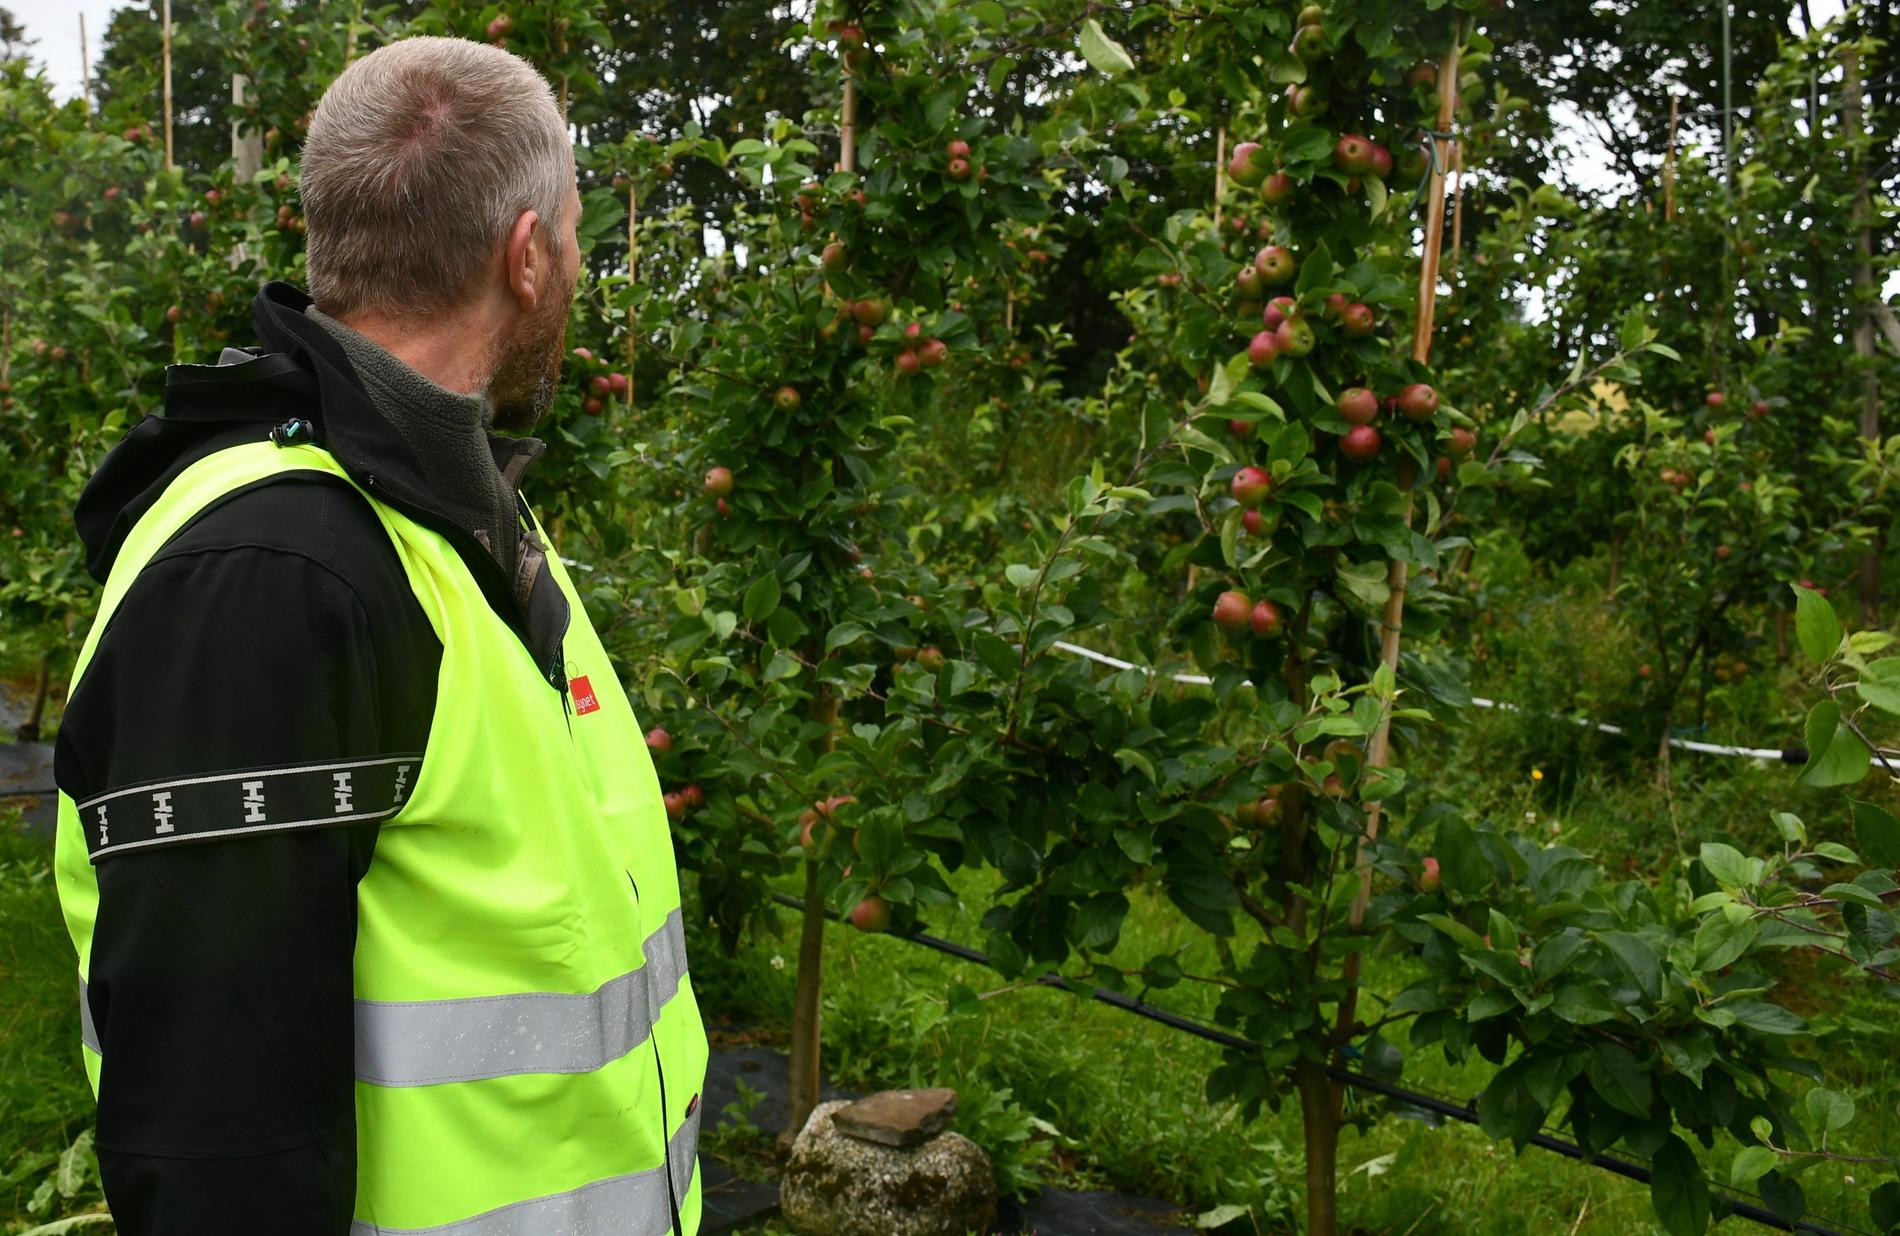  Jo Arild Tønnesen har sjekket alle de 4.500 epletrærne på gården - ingen er smittet av pærebrann.